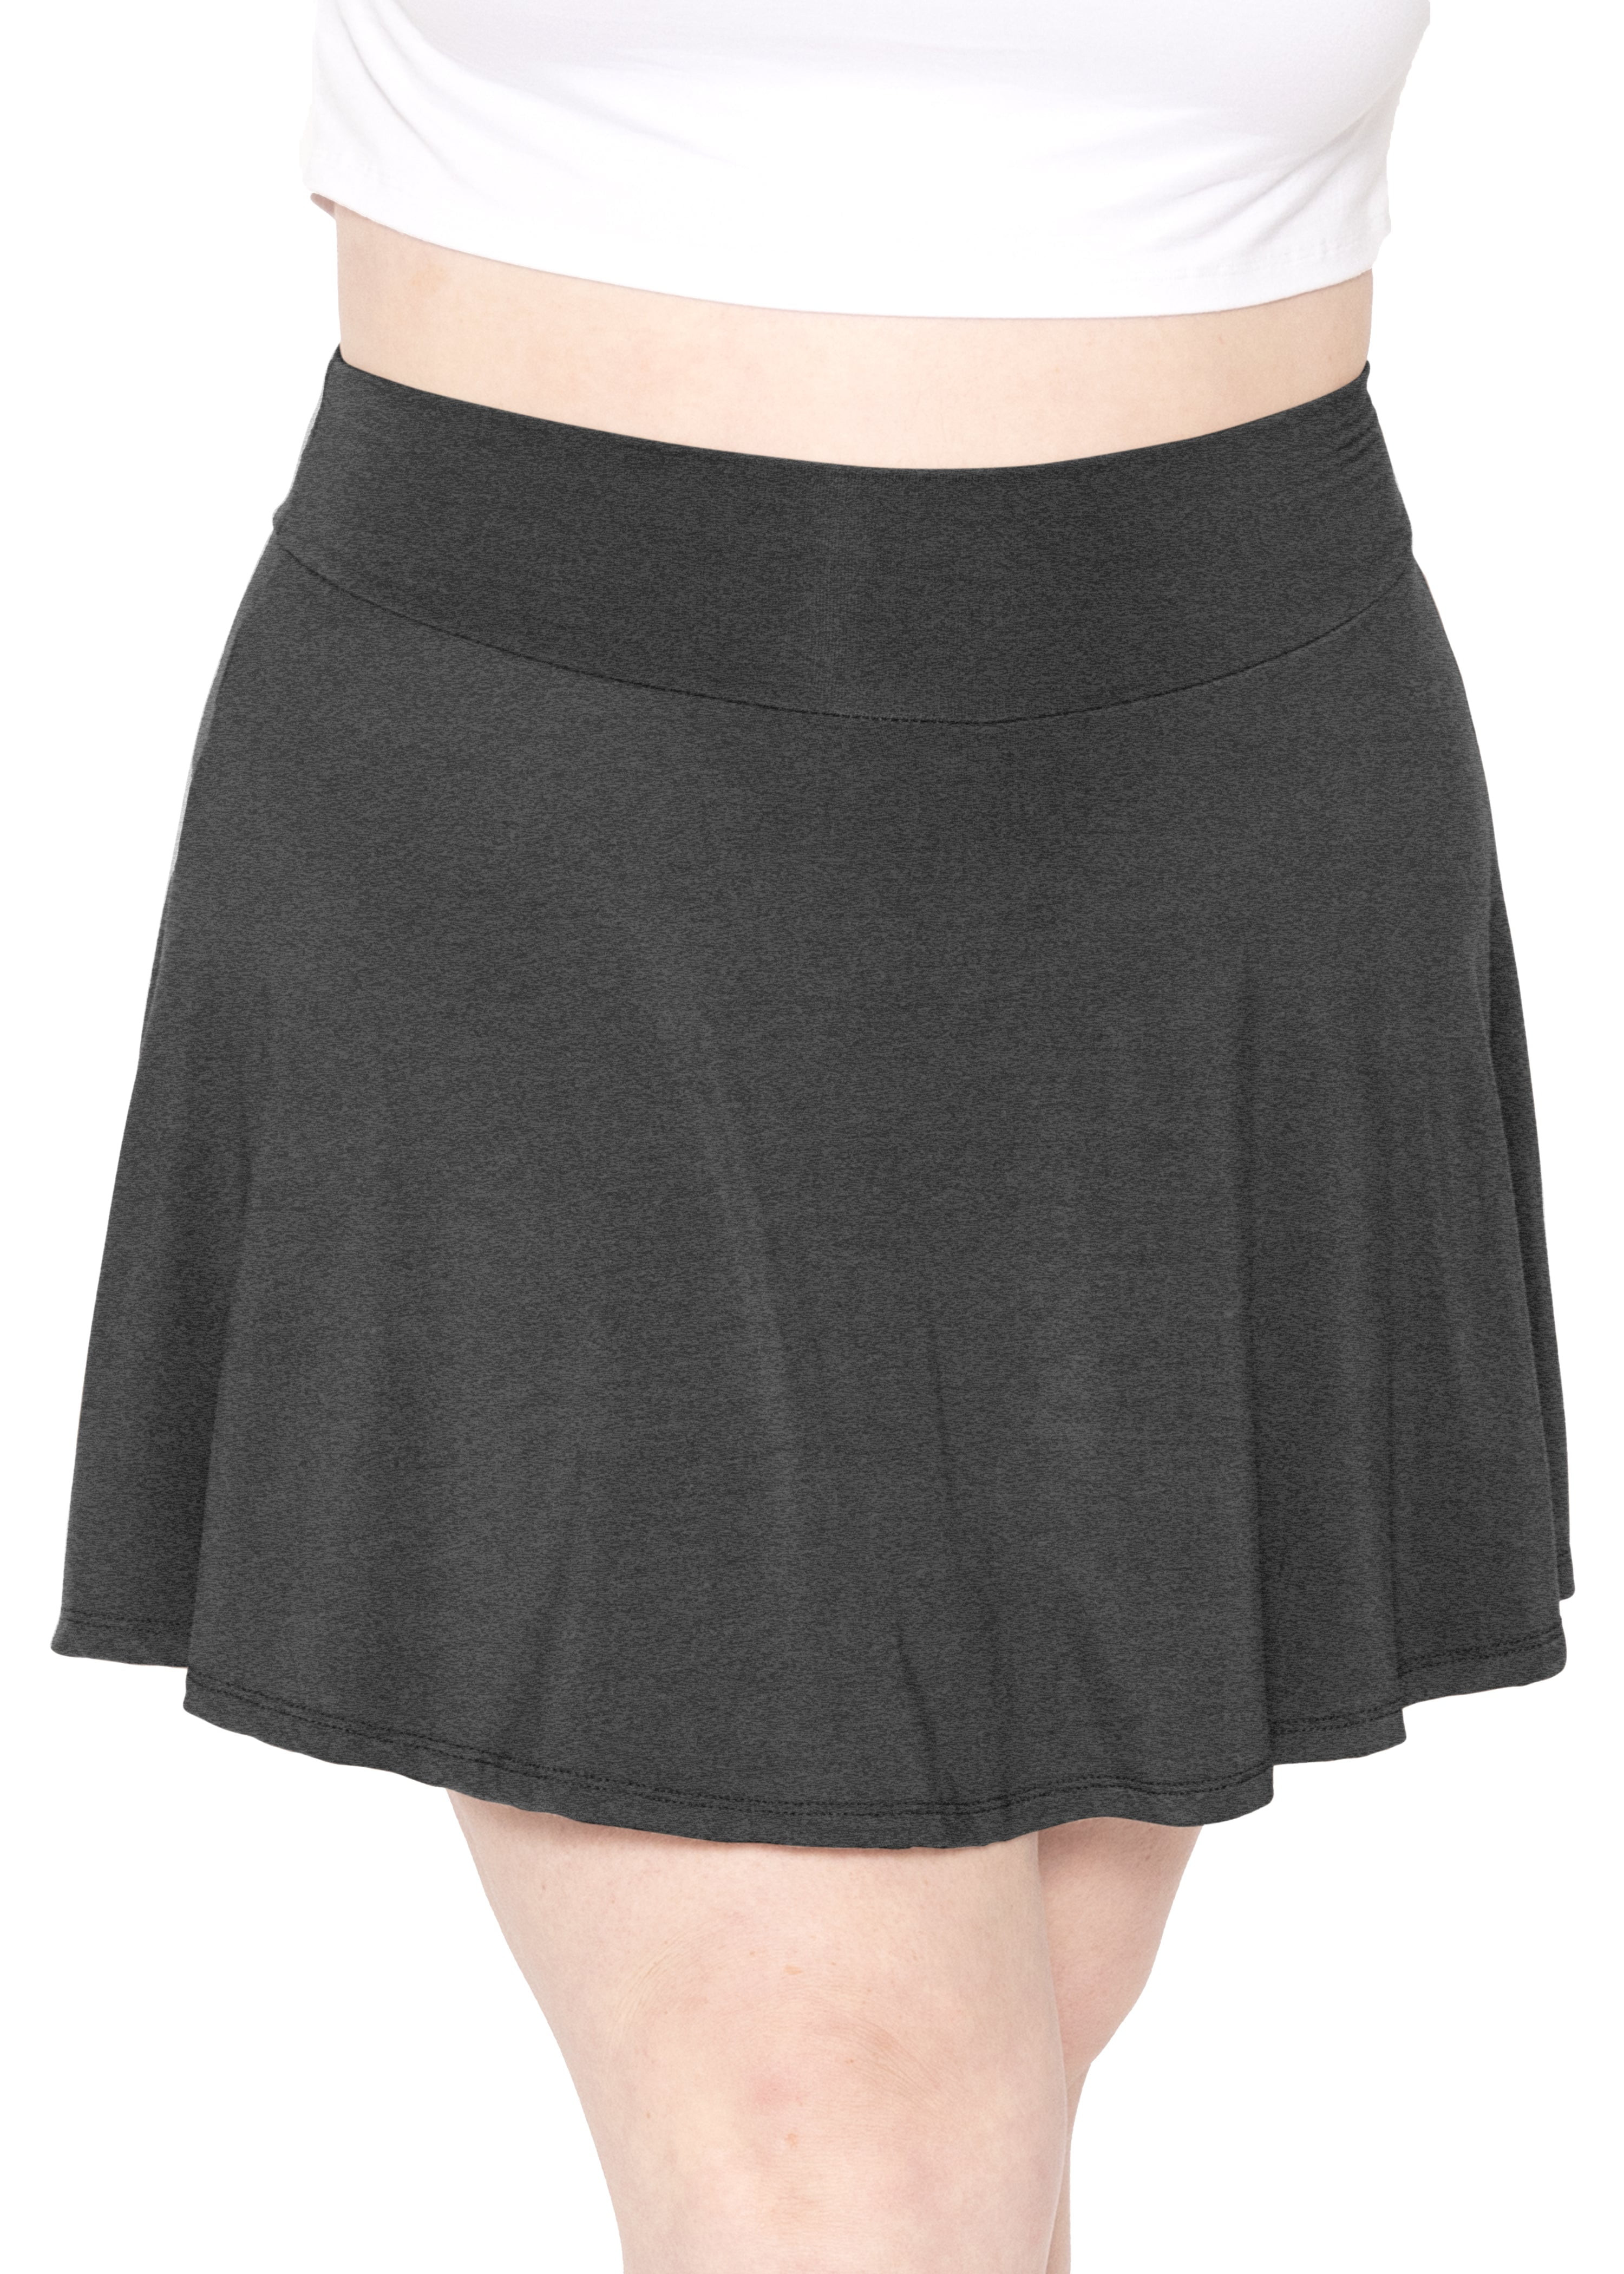 Women's High Waist Skater Skirt with Built in Shorts | Plus Size XL-3X -  Walmart.com